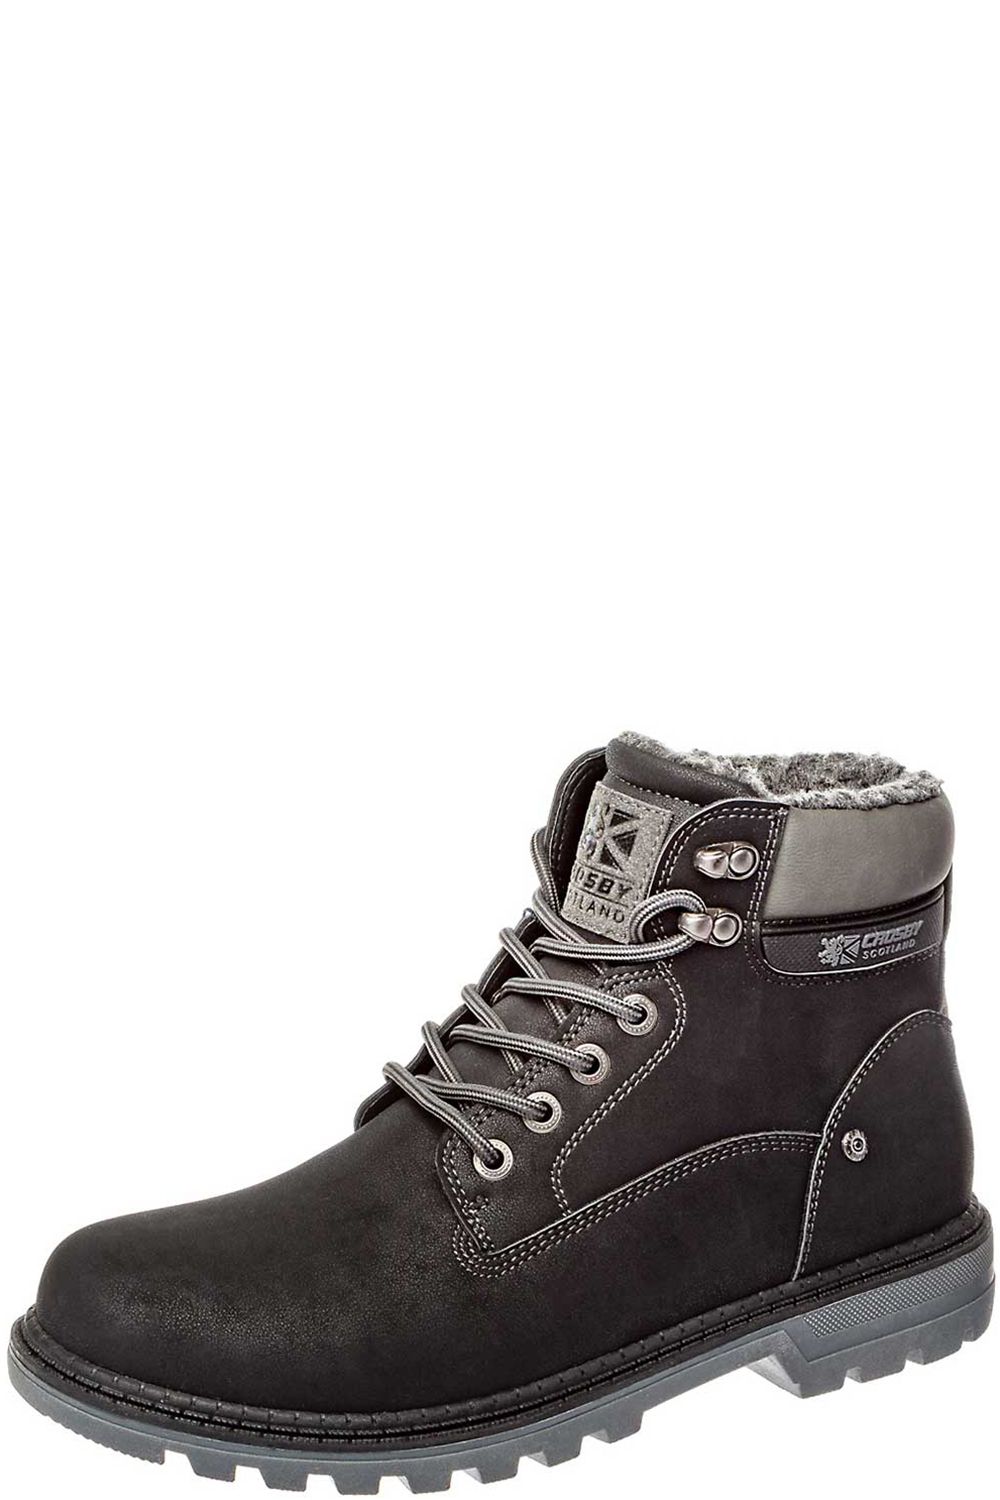 Ботинки Crosby, размер 41, цвет черный 488173/01-02 - фото 1